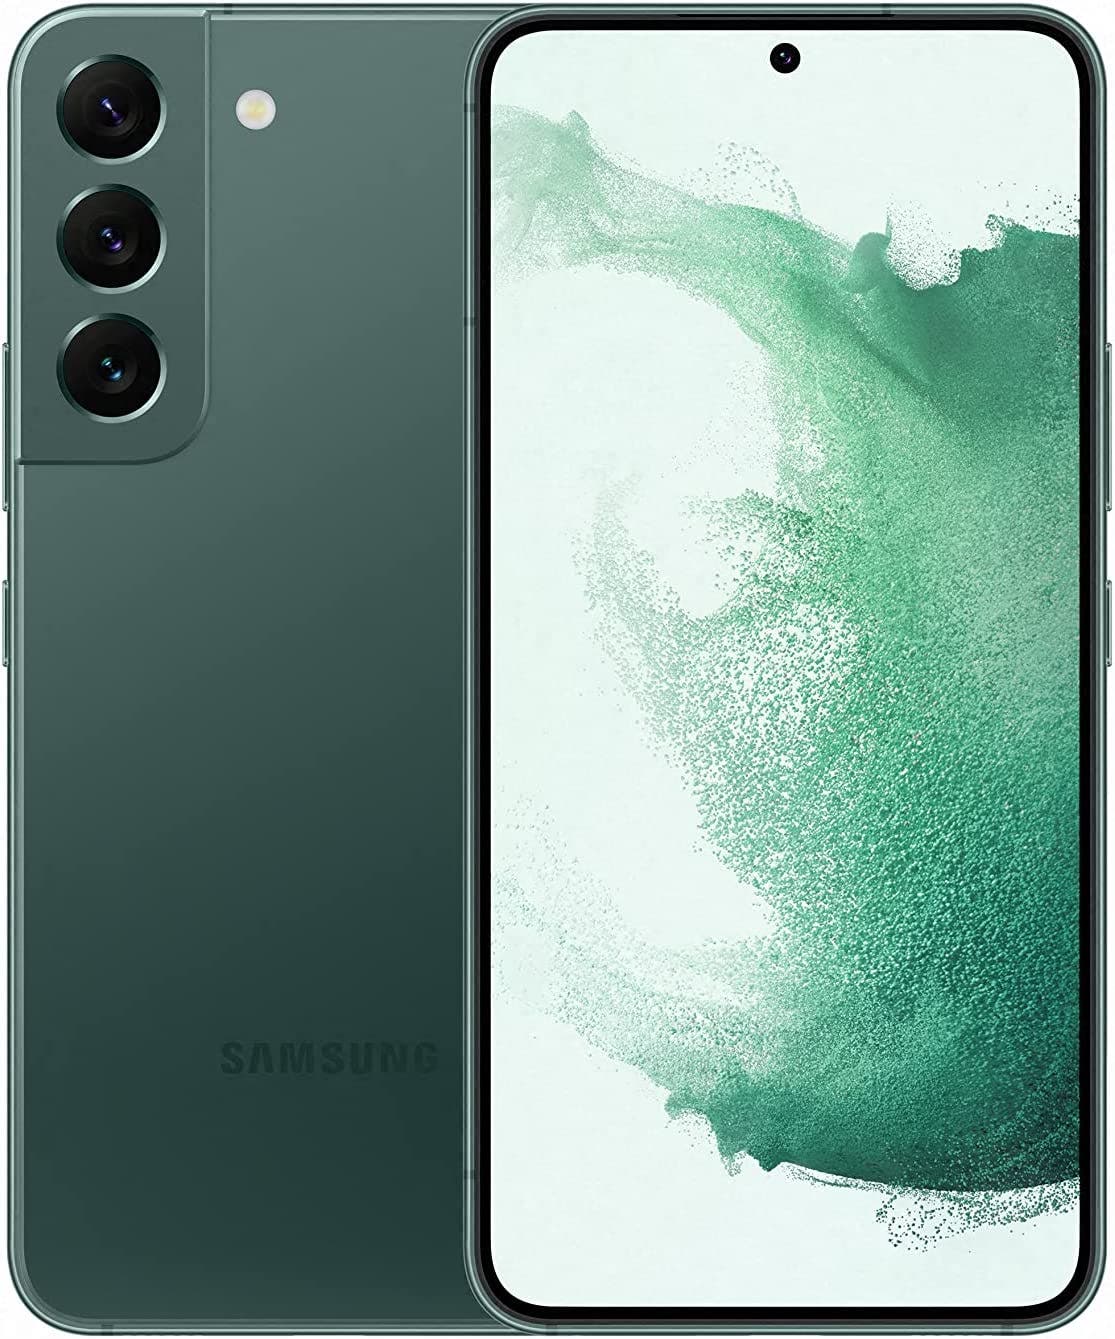 Aprovecha las ofertas flash de Samsung y hazte con un Samsung Galaxy S22  rebajado a precio de liquidación